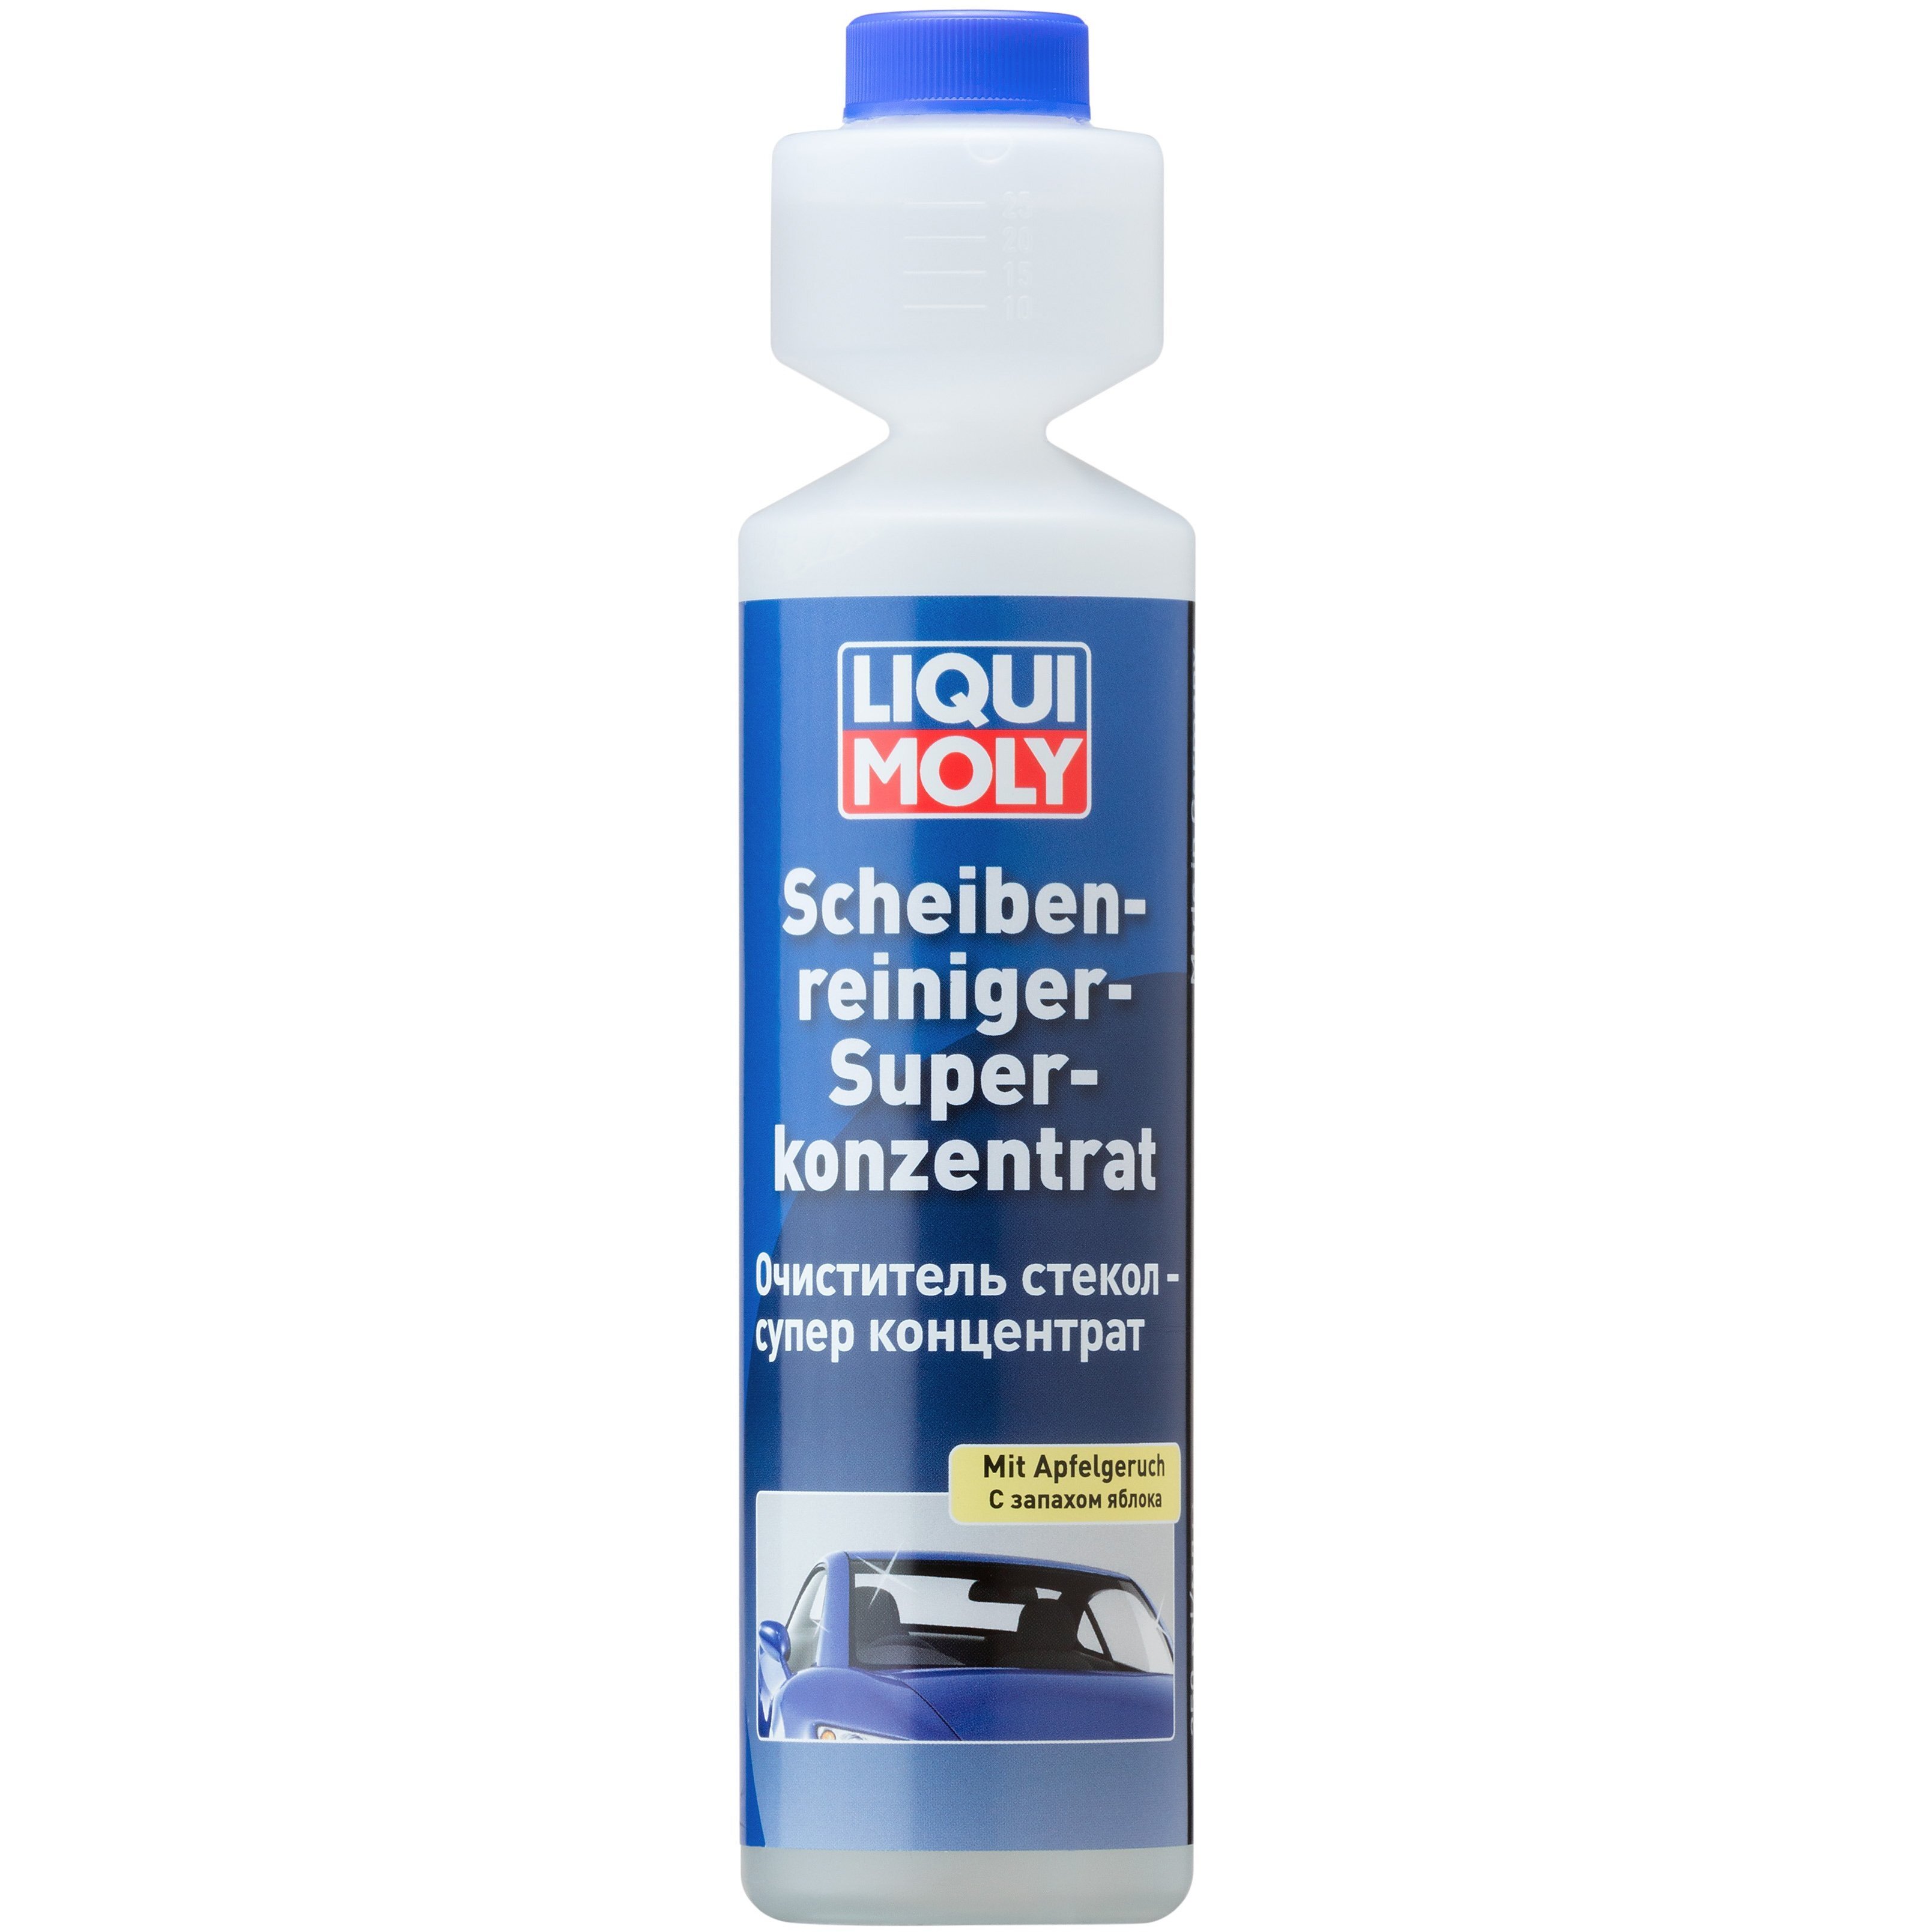 Очиститель Liqui Moly для стекла - 1:100 Яблоко Scheiben-Reiniger-Super-Konz (Mit Apfelgeruch) 0,25л (4100420023804) фото 1